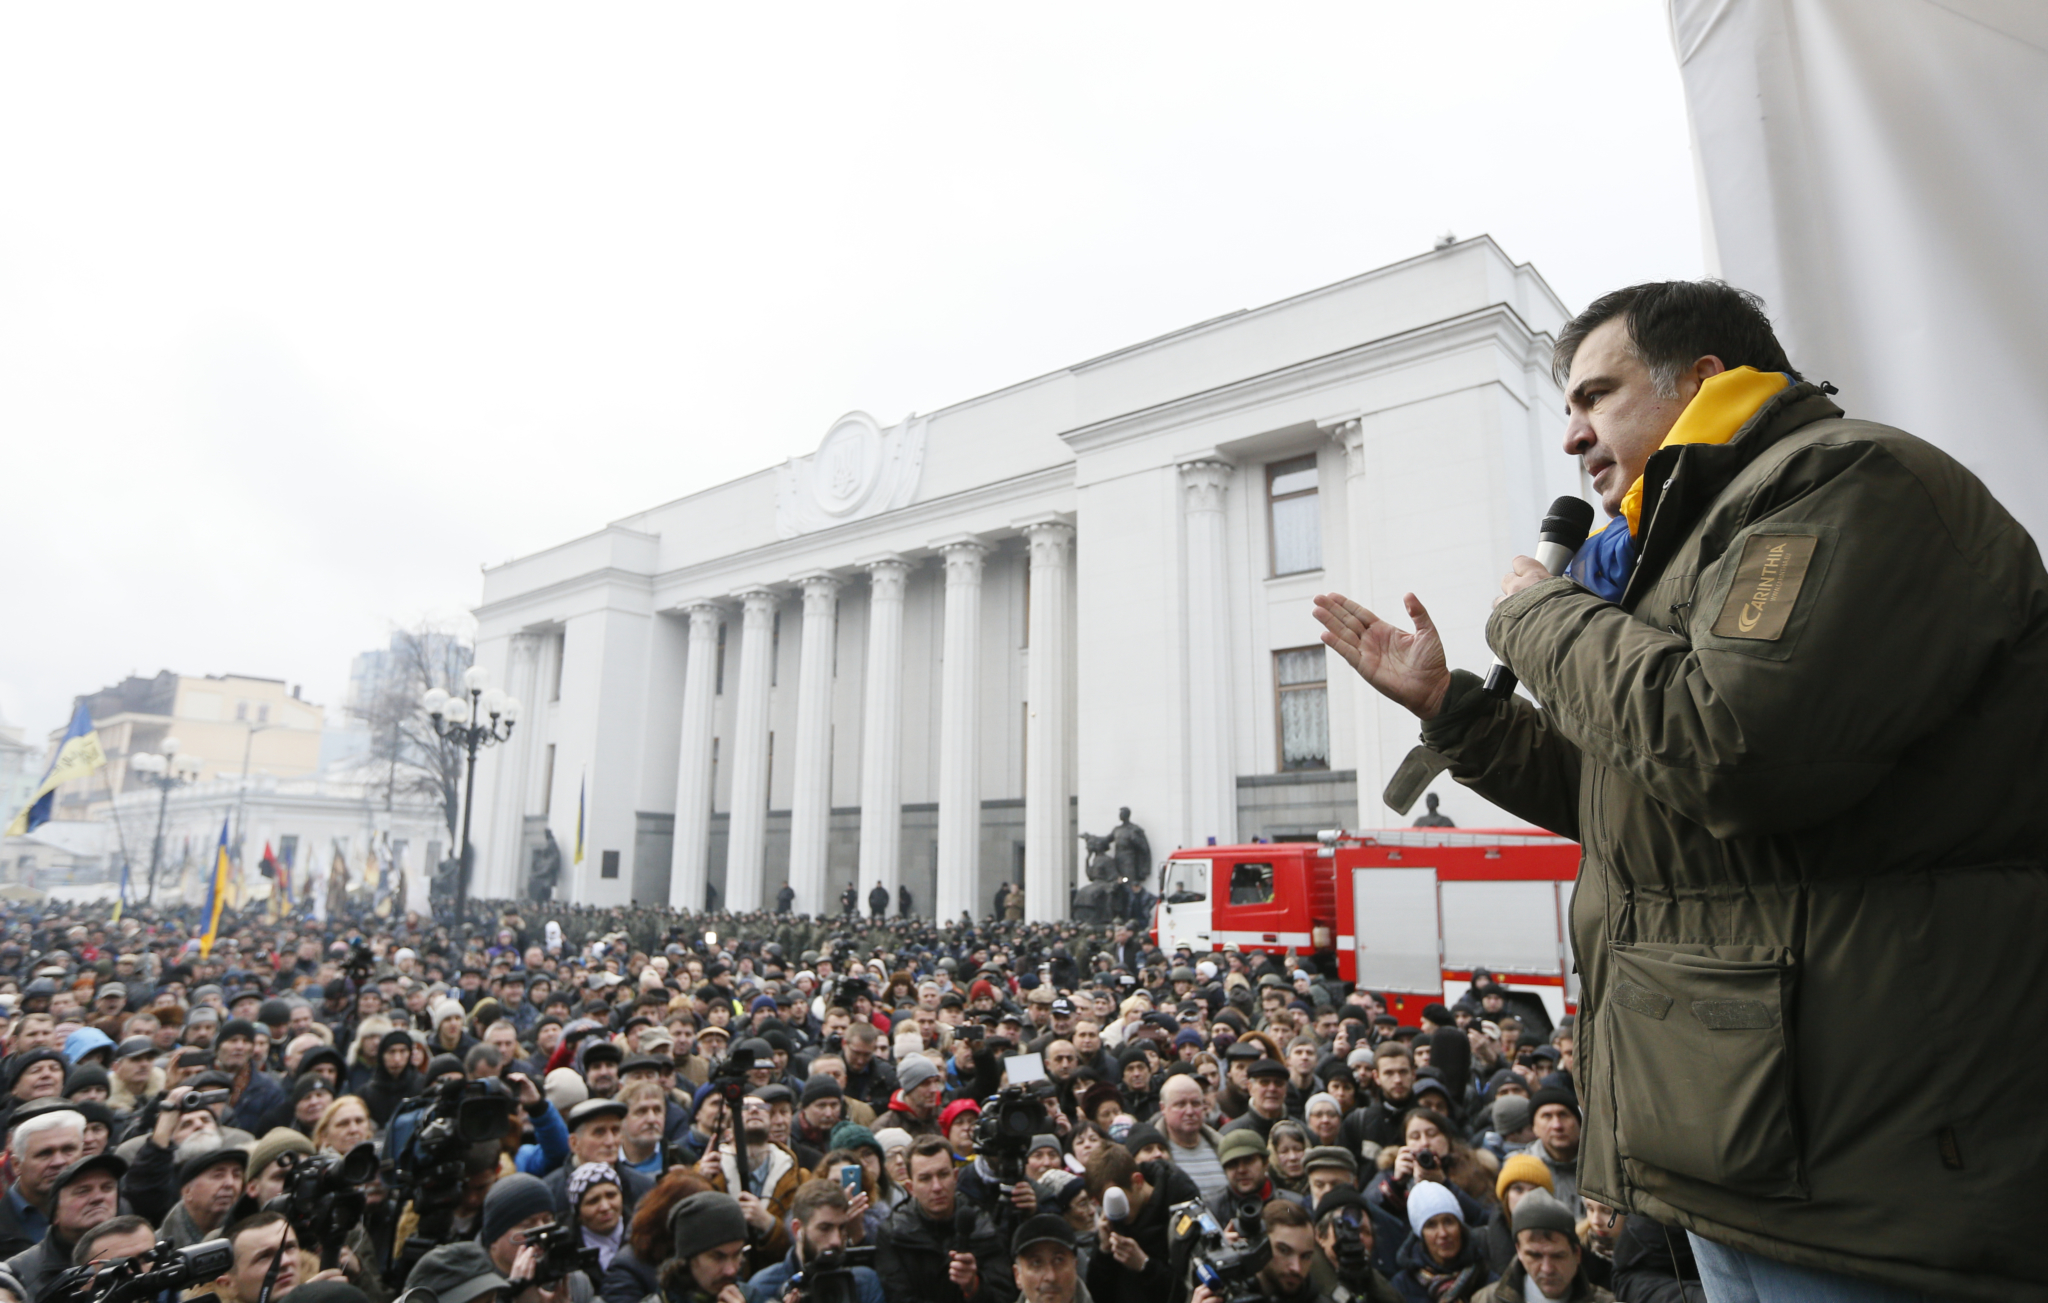 Третий президент Грузии и лидер украинского движения "Рух новых сил" Михаил Саакашвили был арестован сегодня утром после обыска в его квартире. 